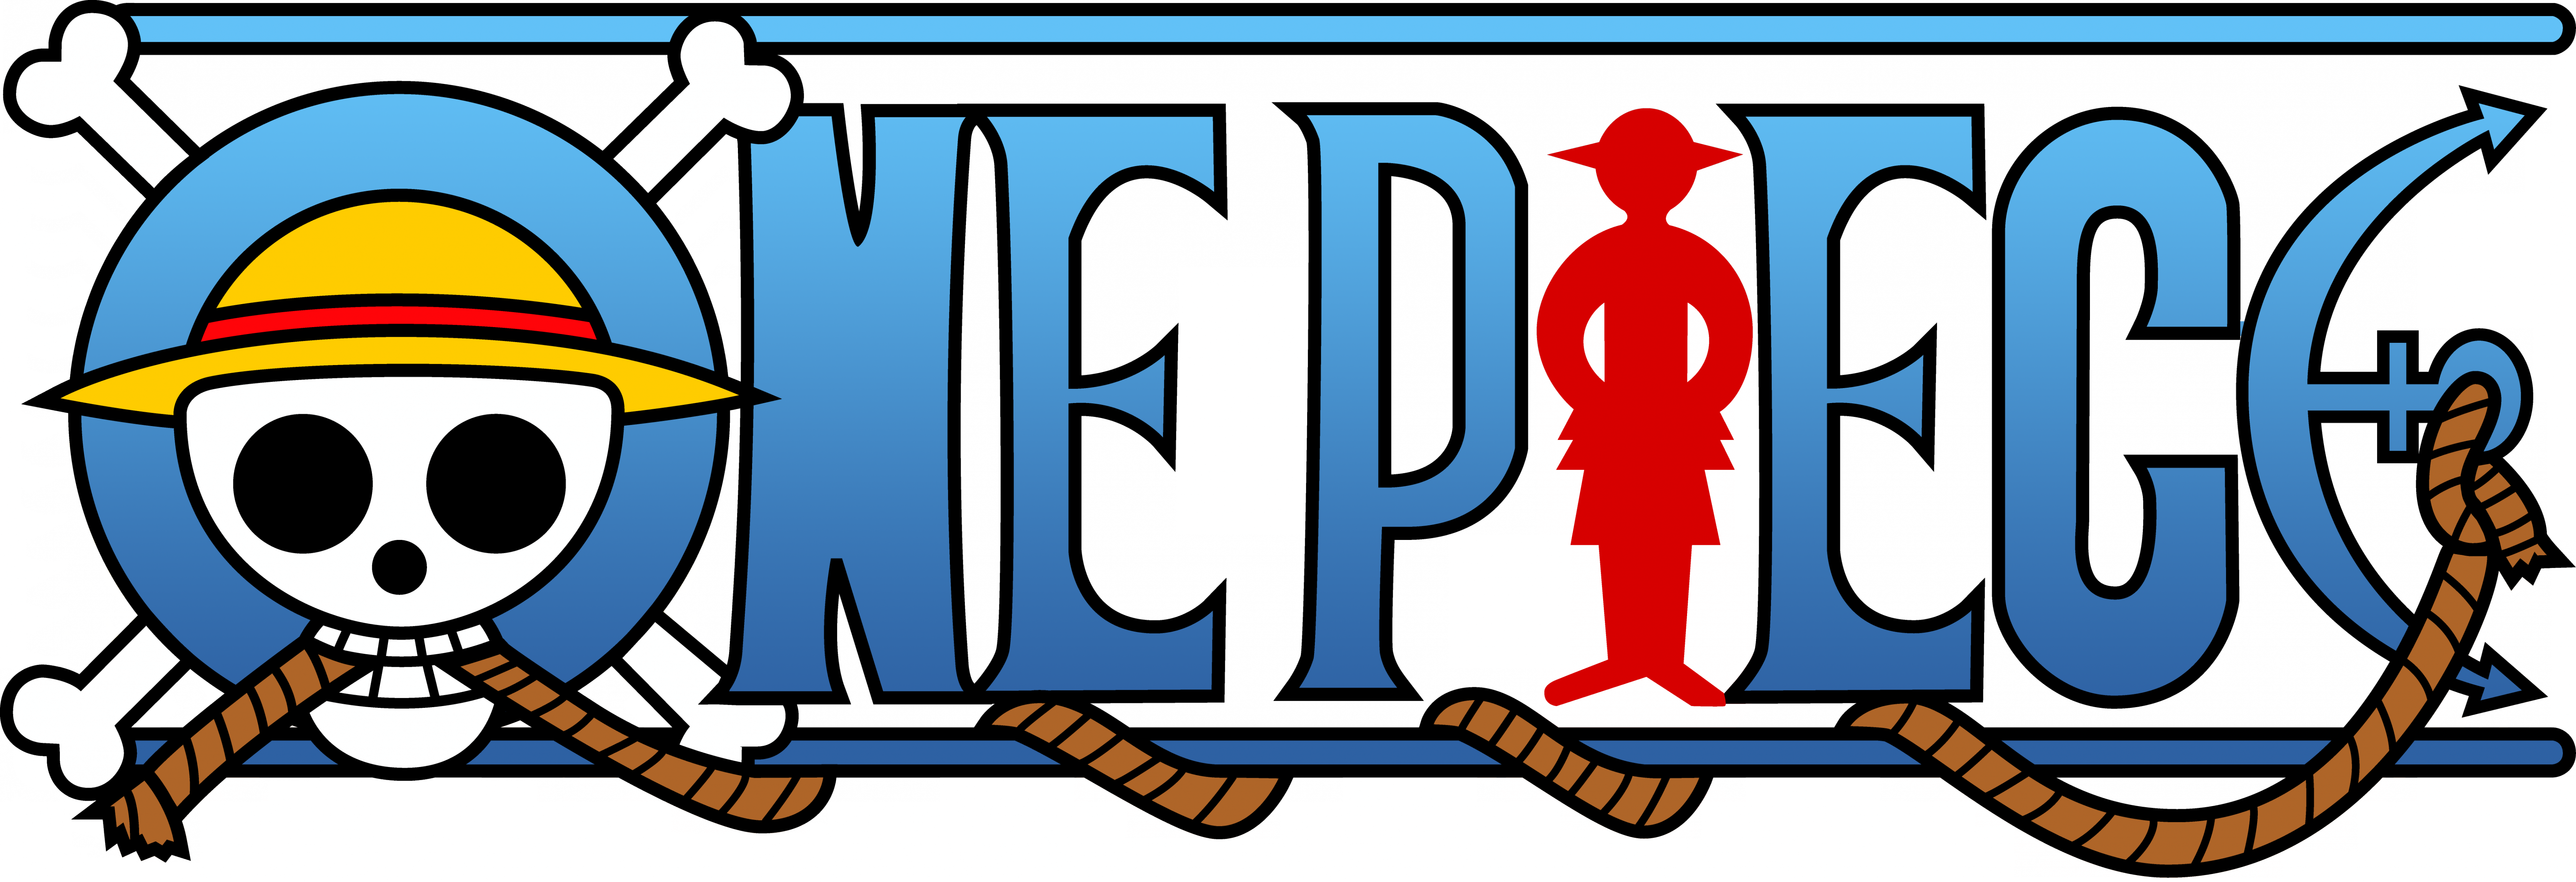 One Piece Logo.